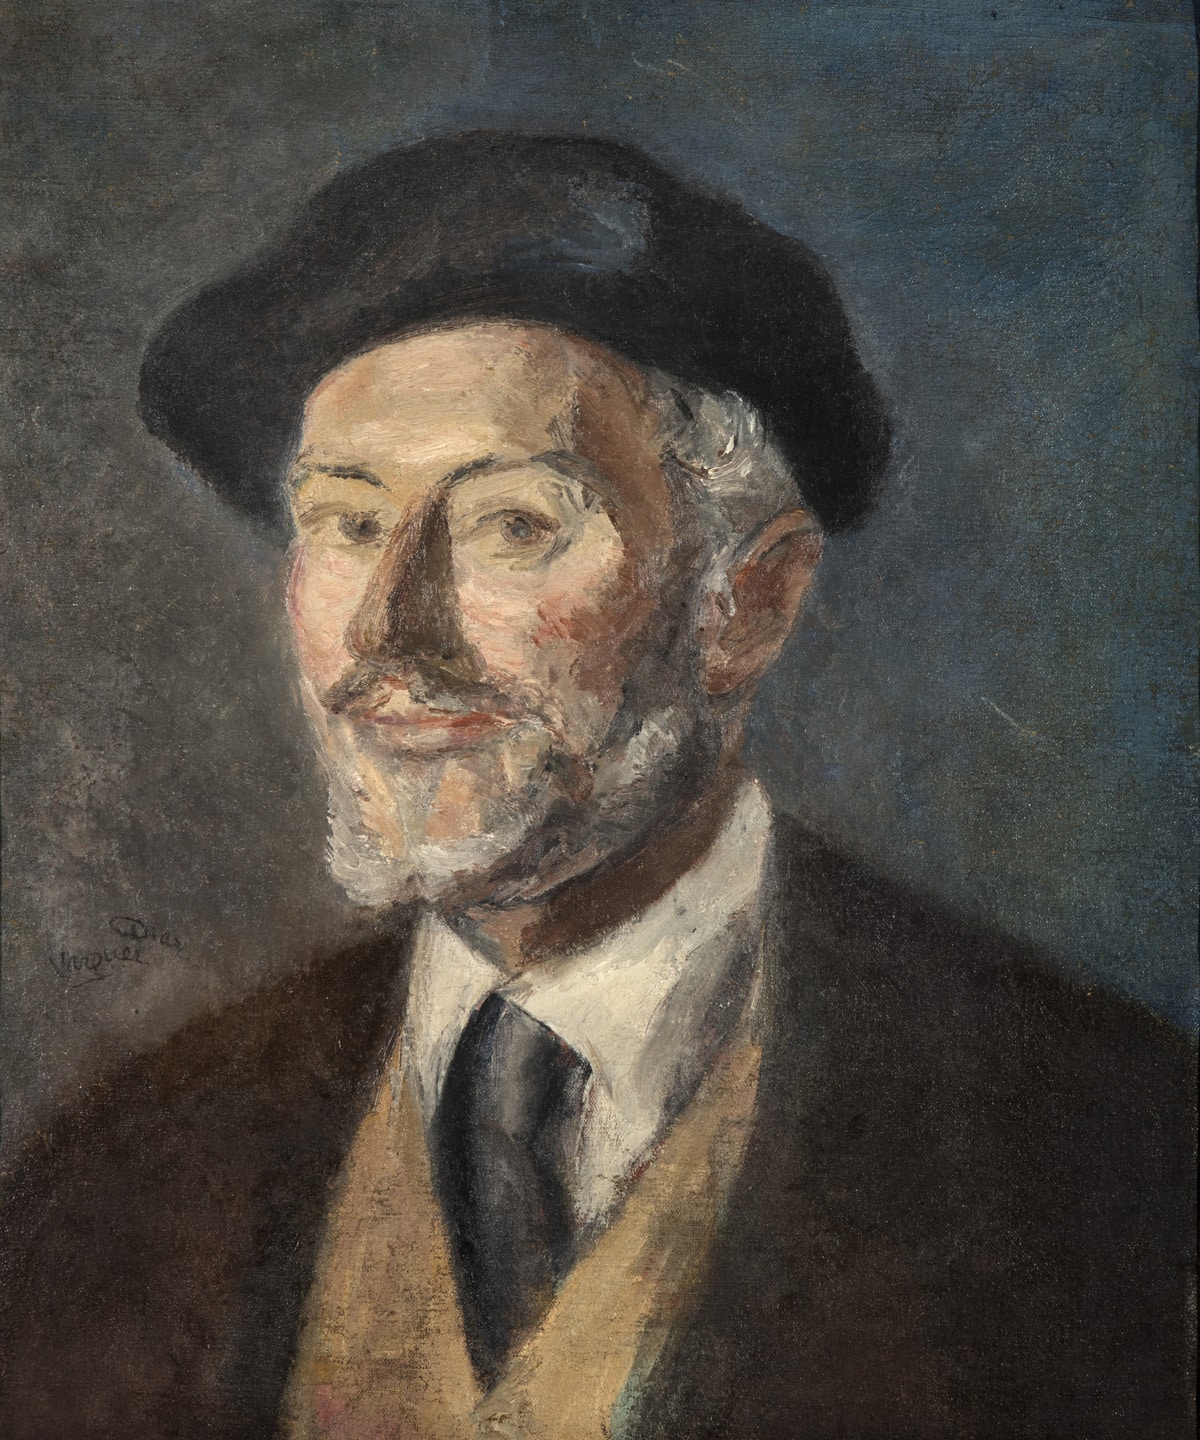 Retrato de personaje francés con boina y barba blanca